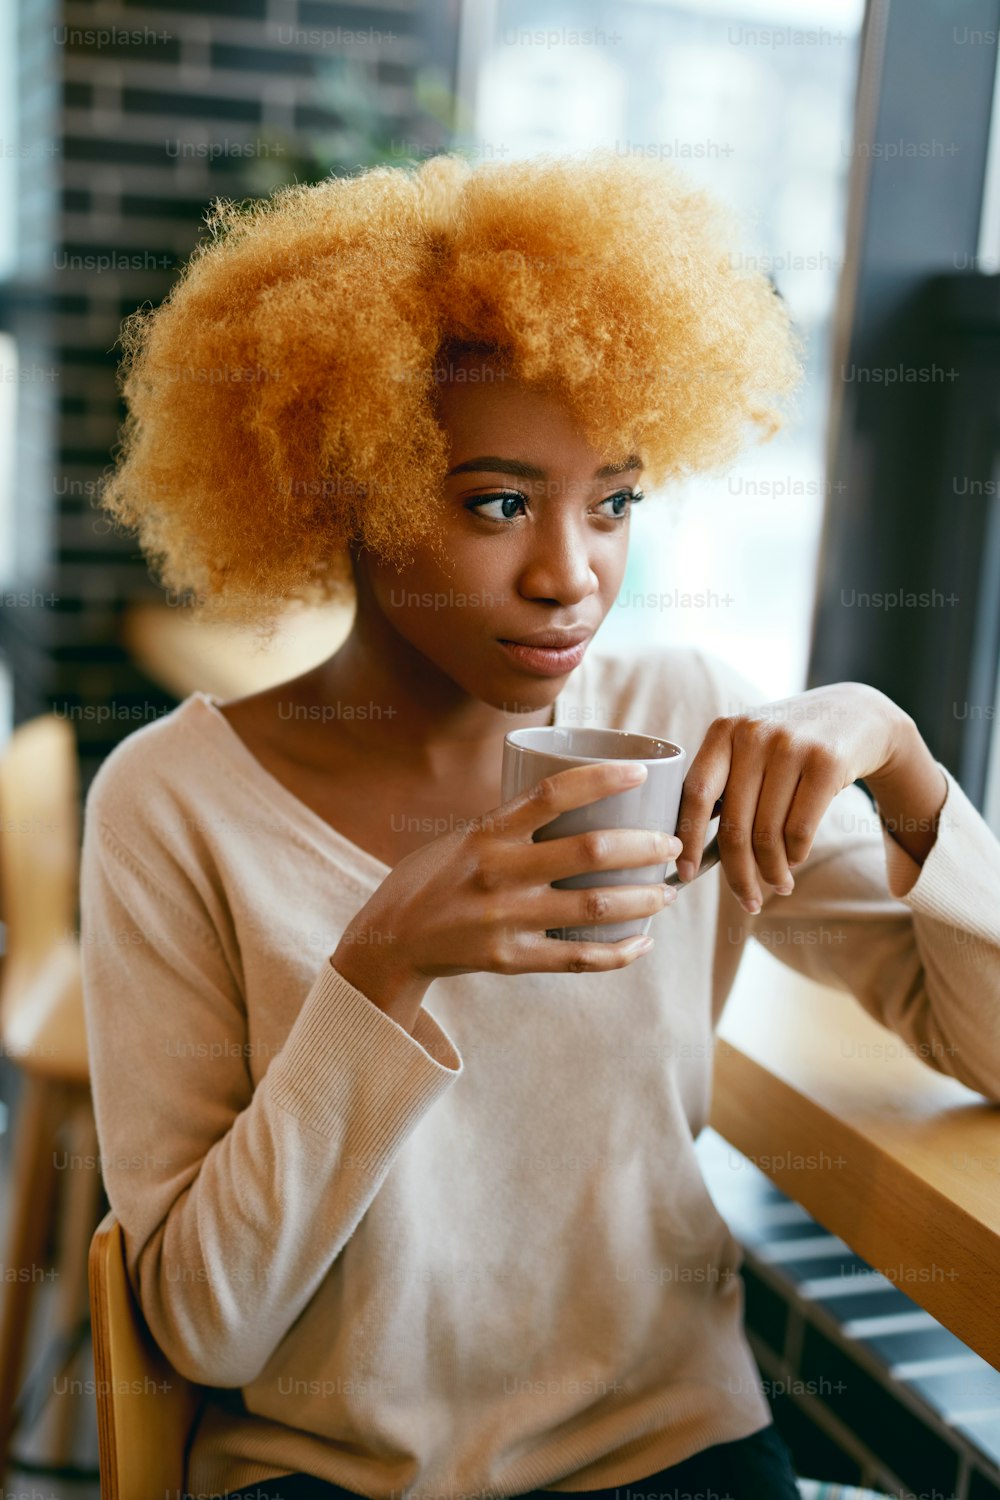 Schönes Mädchen trinkt Kaffeegetränk im Café in der Nähe des Fensters. Porträt der jungen lächelnden afrikanischen Frau in Freizeitkleidung mit Cu0p von heißem Getränk im Café. Hohe Auflösung